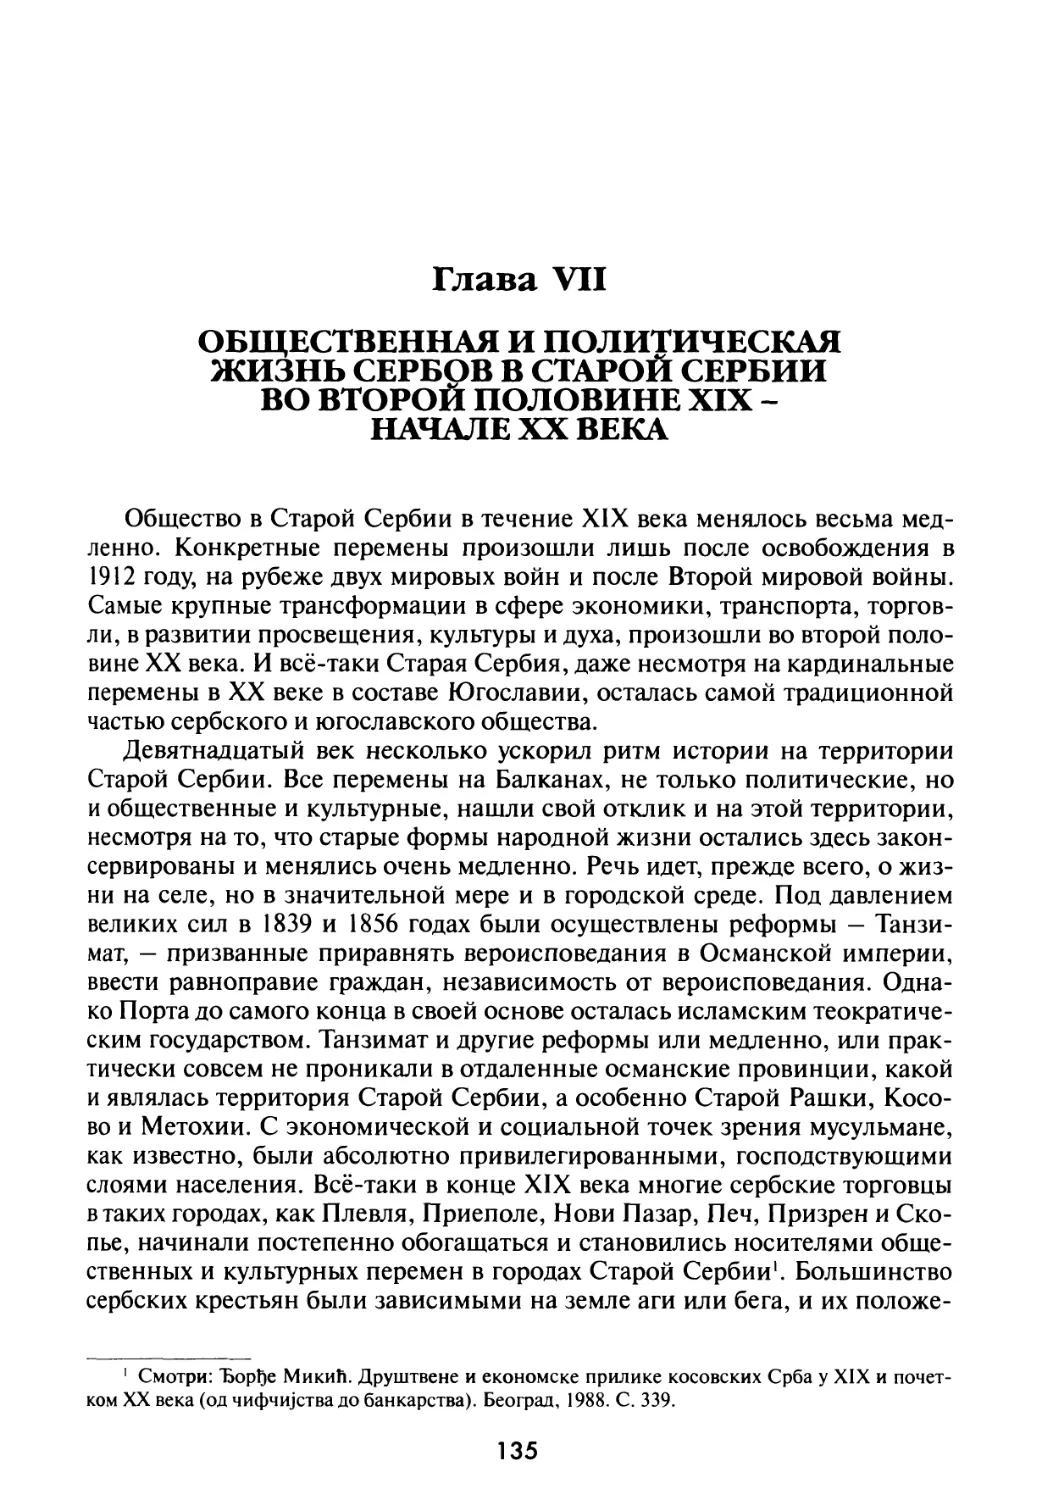 Глава VII. Общественная и политическая жизнь сербов в Старой Сербии во второй половине XIX – начале XX века